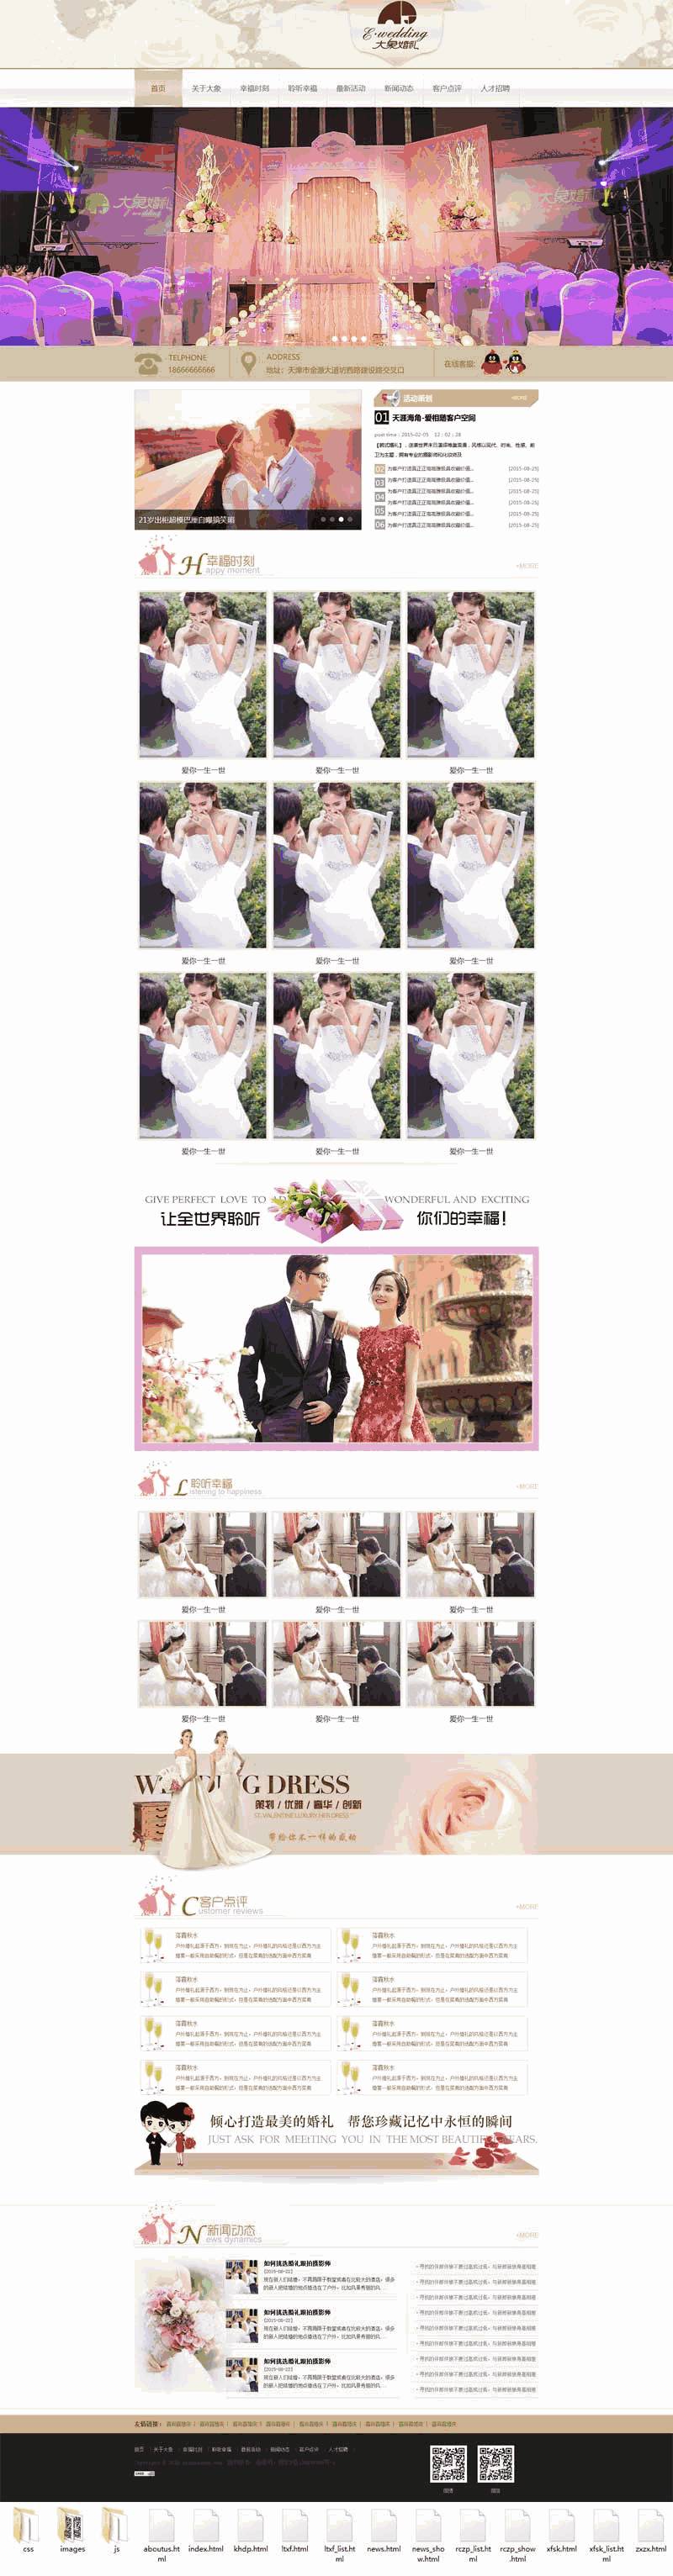 婚庆婚礼策划公司官网网站制作_网站建设模板演示图